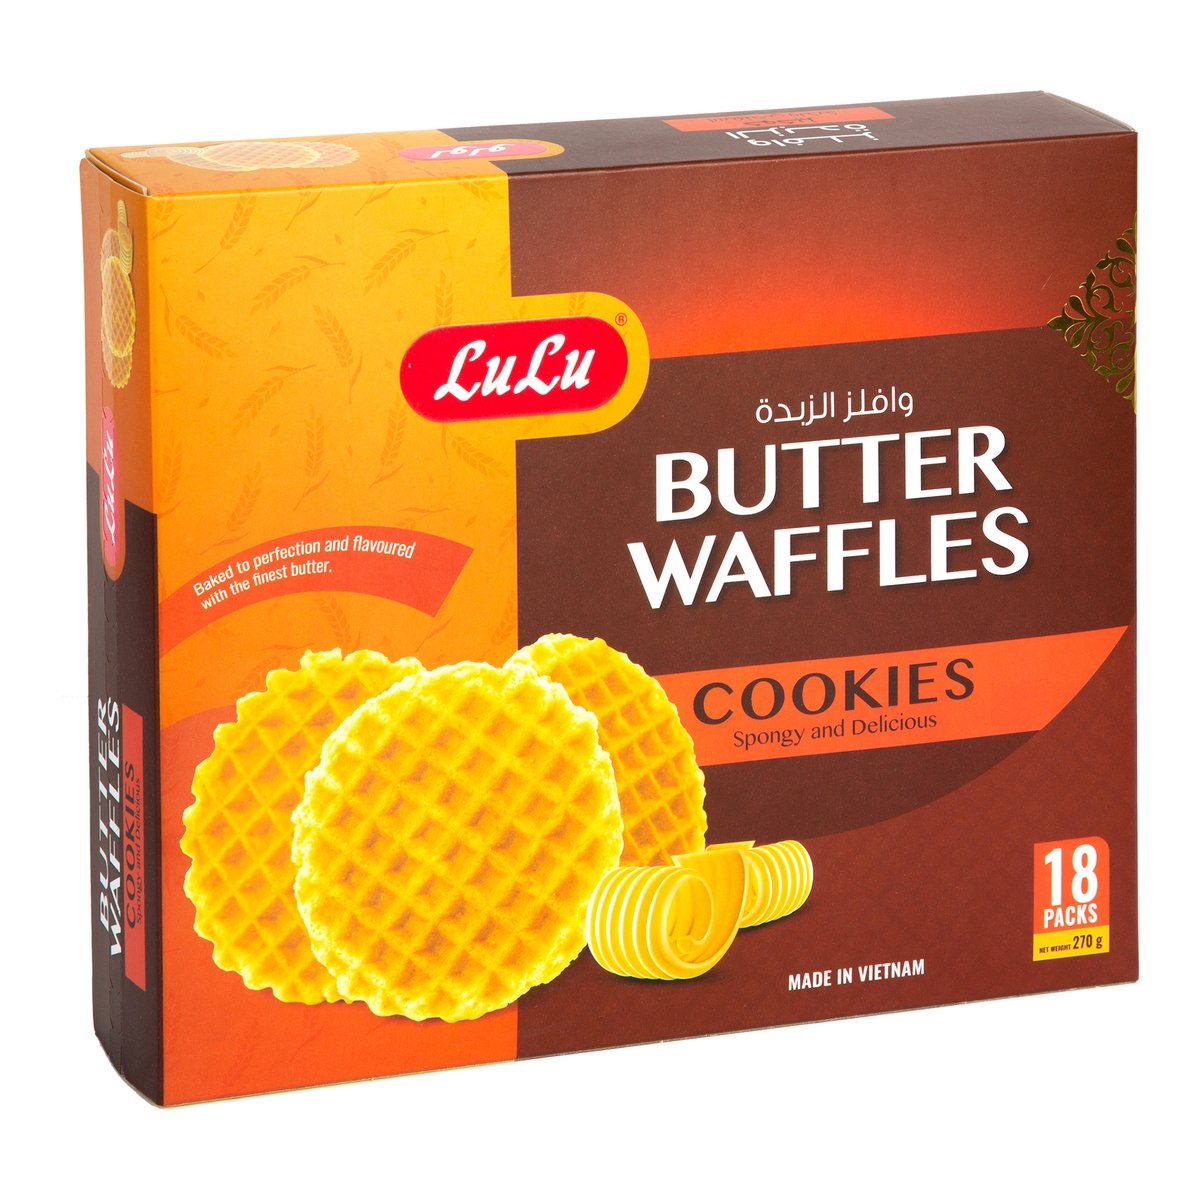 LuLu Butter Waffles Cookies 270g